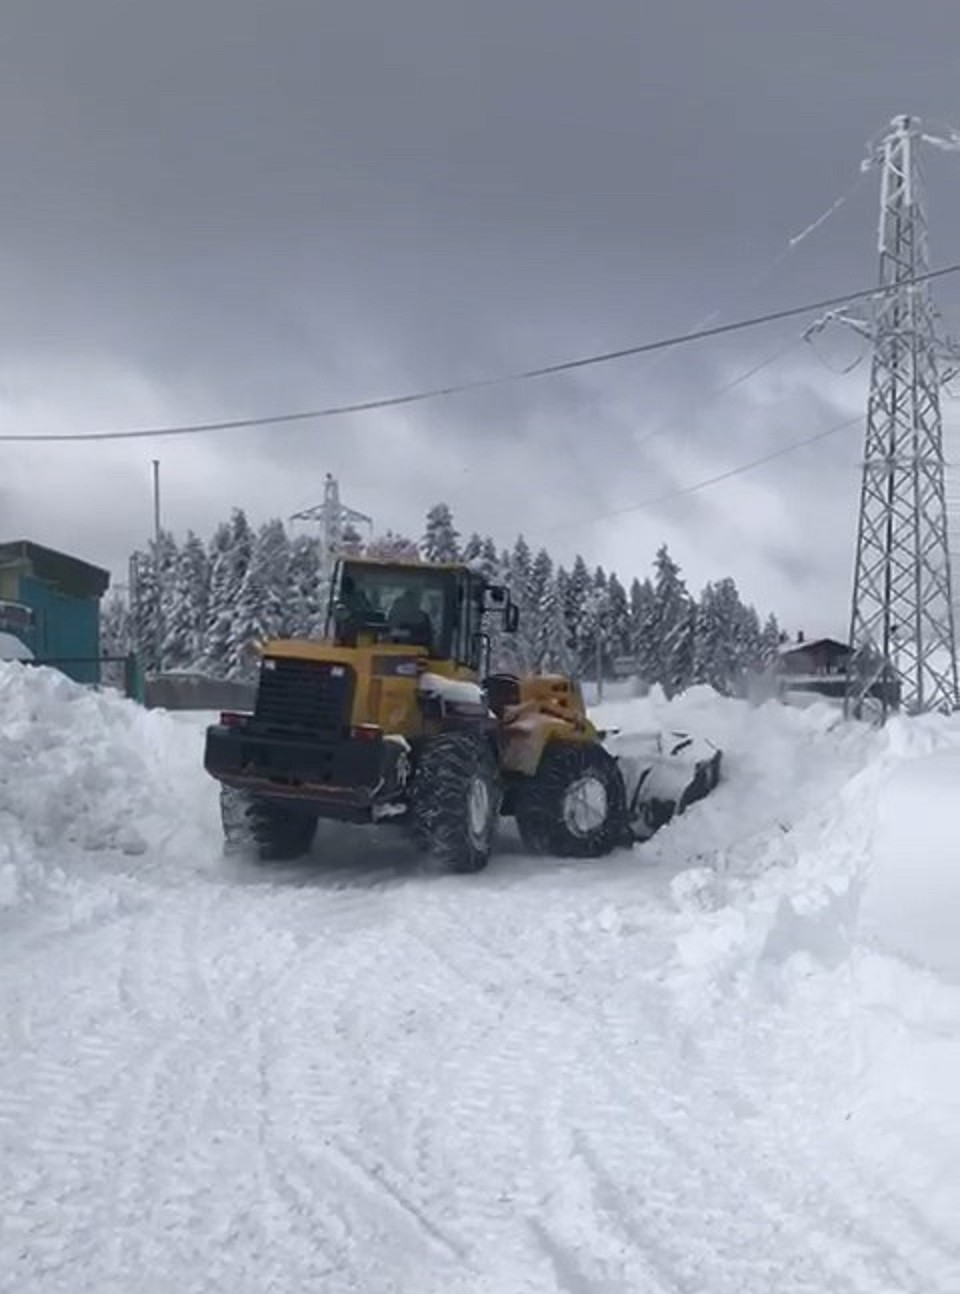 Kastamonu’da yoğun kar yağışının kapattığı 281 köy yolu ulaşıma açıldı #kastamonu